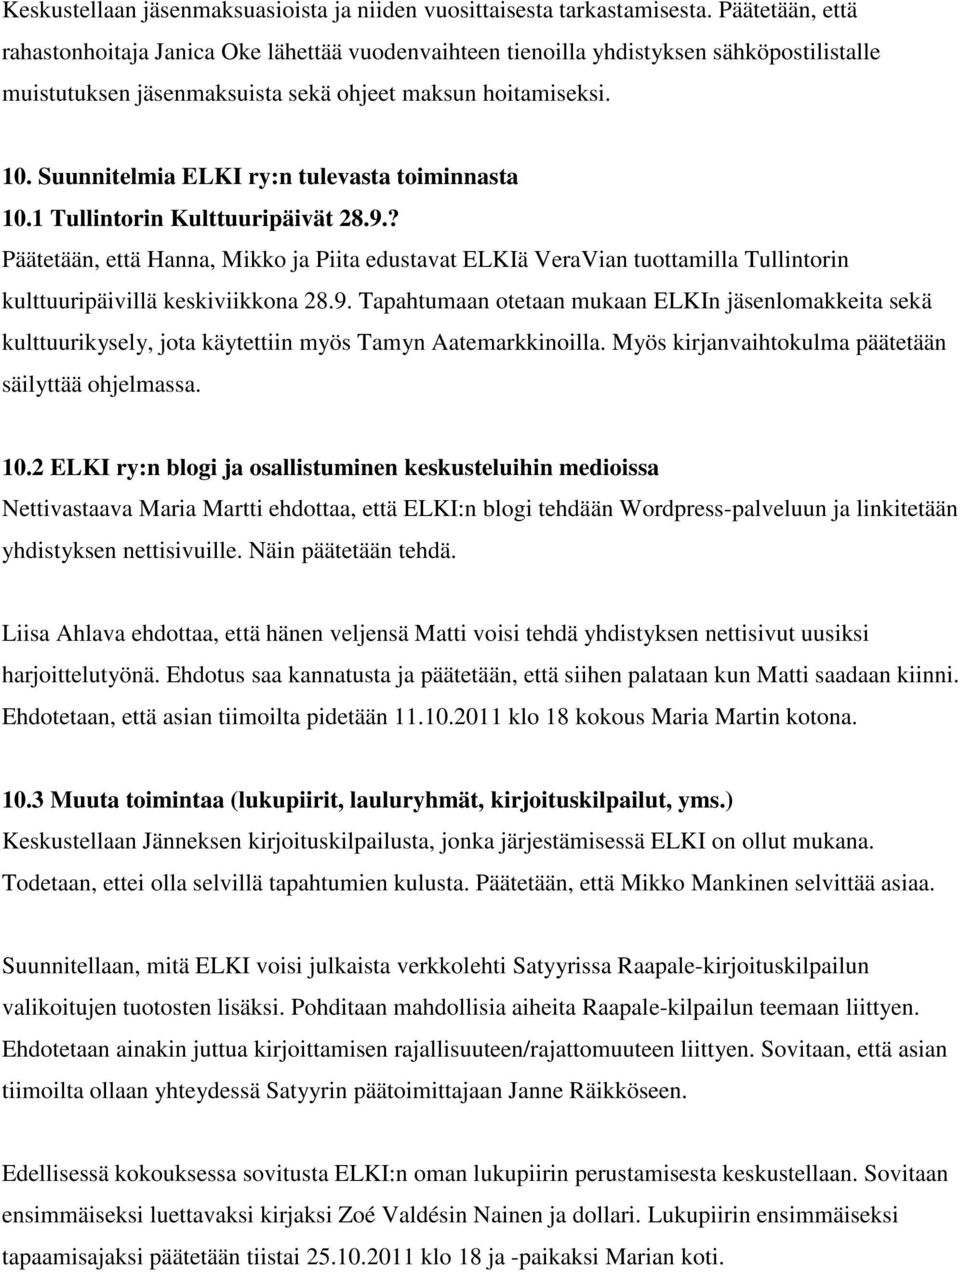 Suunnitelmia ELKI ry:n tulevasta toiminnasta 10.1 Tullintorin Kulttuuripäivät 28.9.